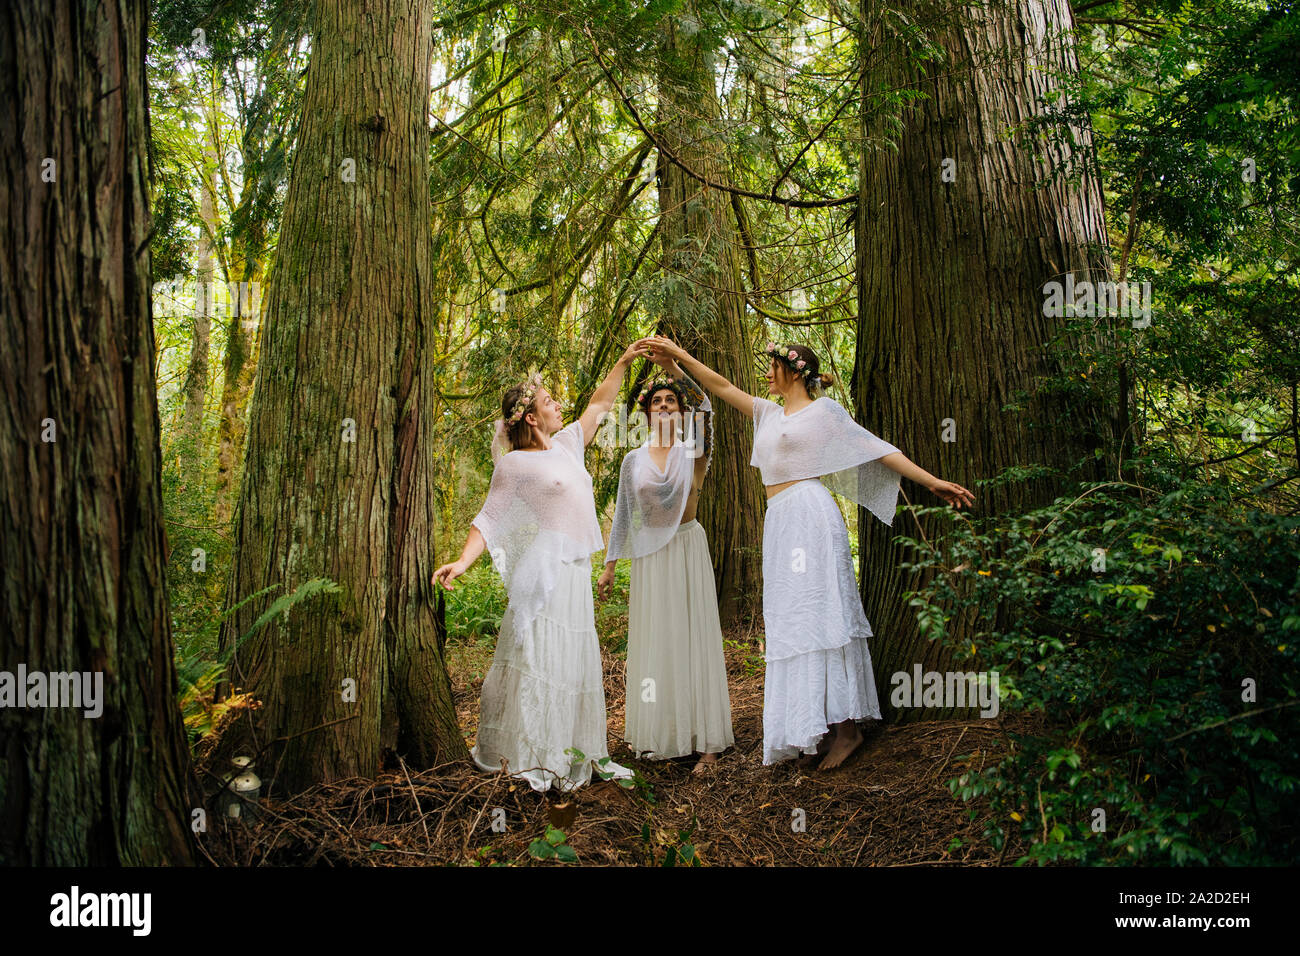 Tres mujeres de ninfas en el bosque, Bainbridge Island, Washington, EE.UU. Foto de stock